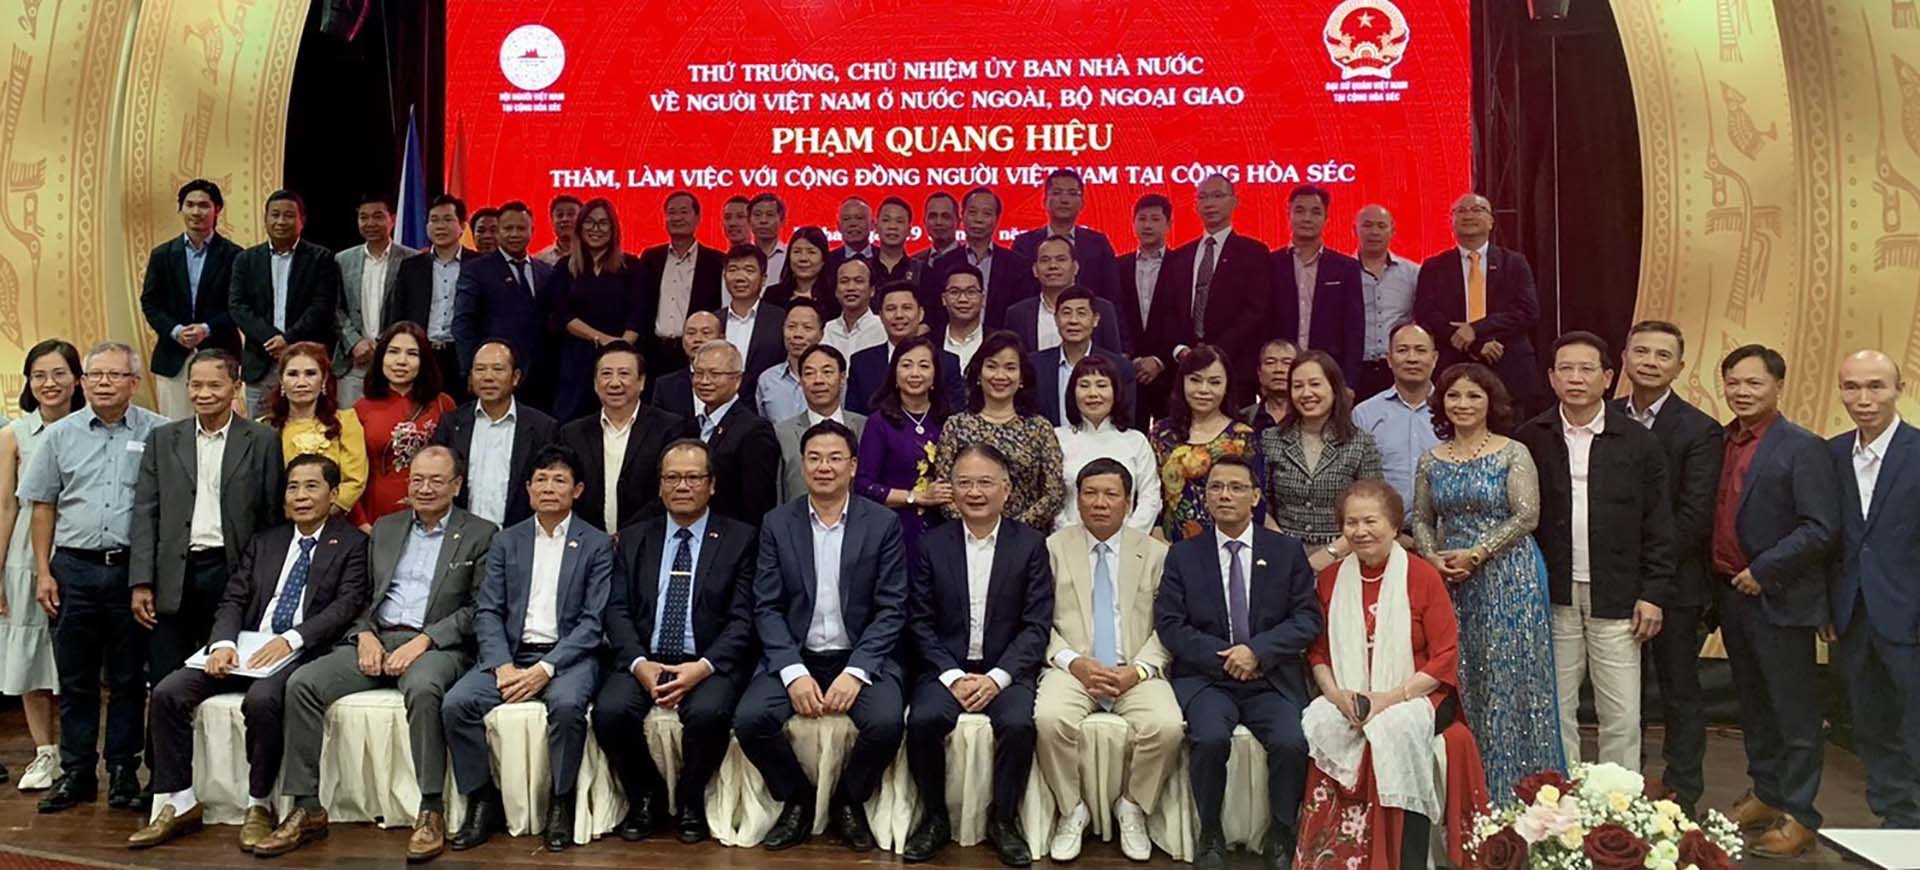 Thứ trưởng Ngoại giao Phạm Quang Hiệu gặp gỡ cộng đồng người Việt Nam tại Czech